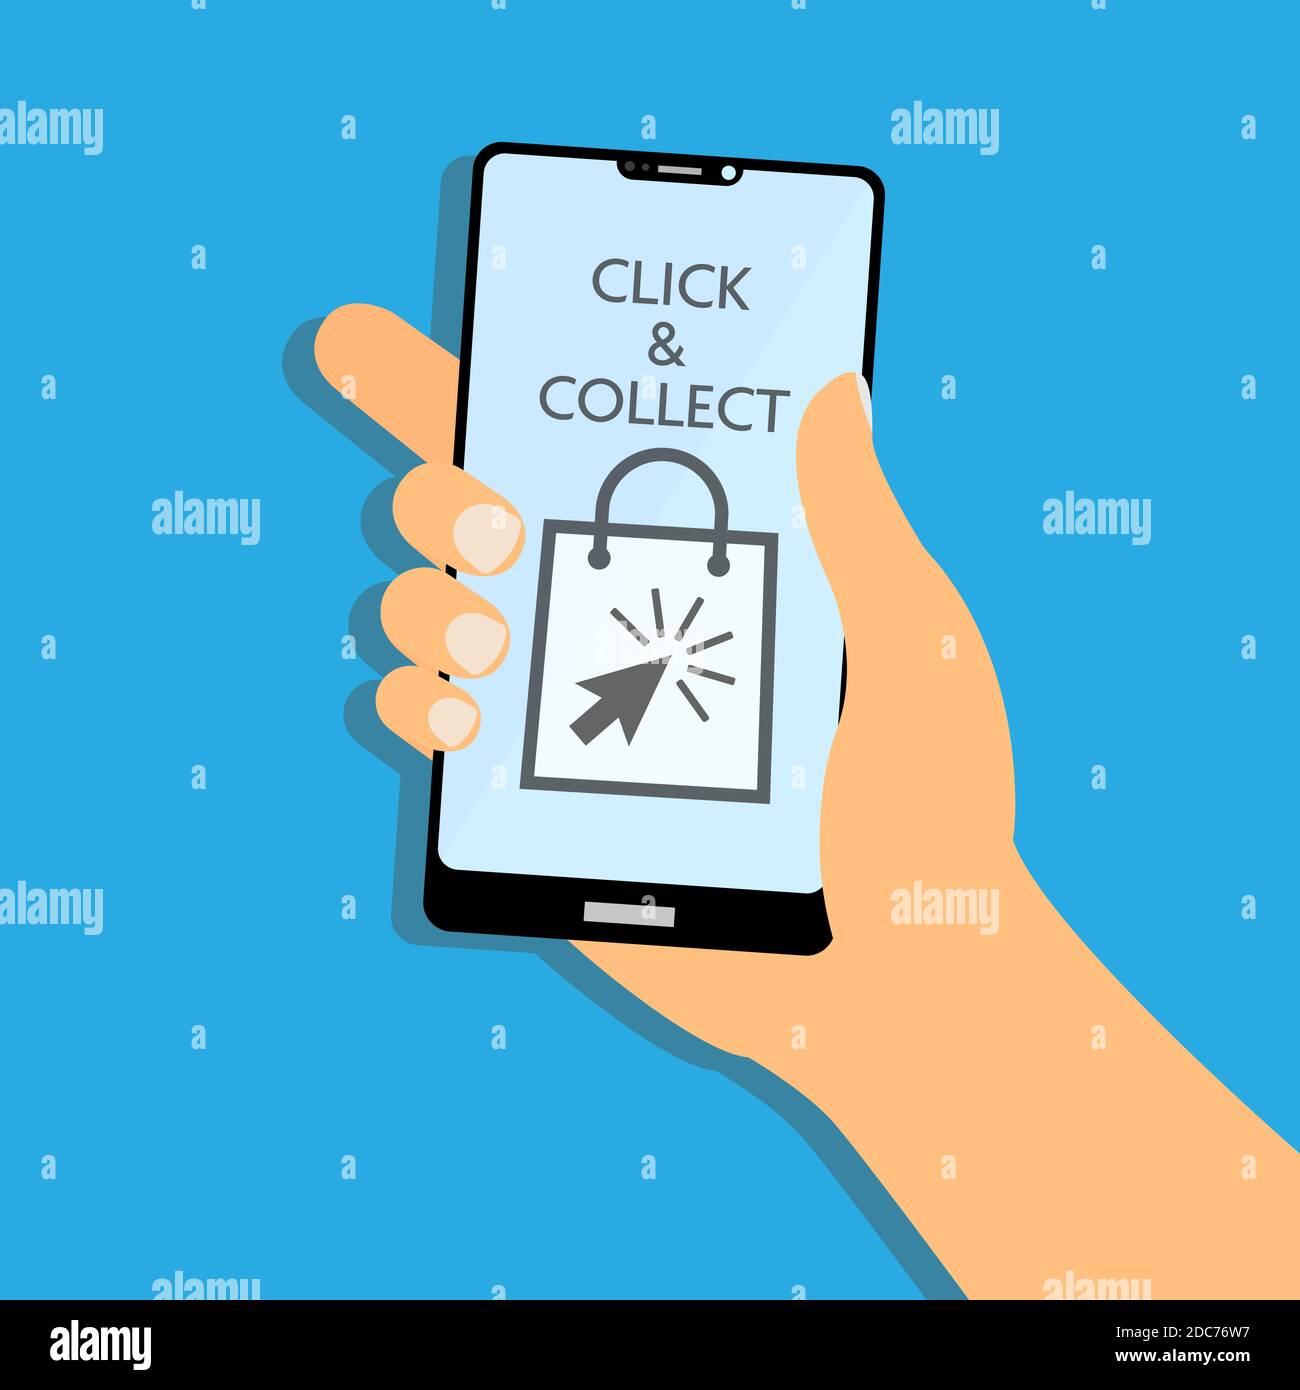 Klicken und sammeln Symbole auf Smartphone-Display Vektor Illustration, online kaufen und abholen bei lokalen Store Konzept Stock Vektor